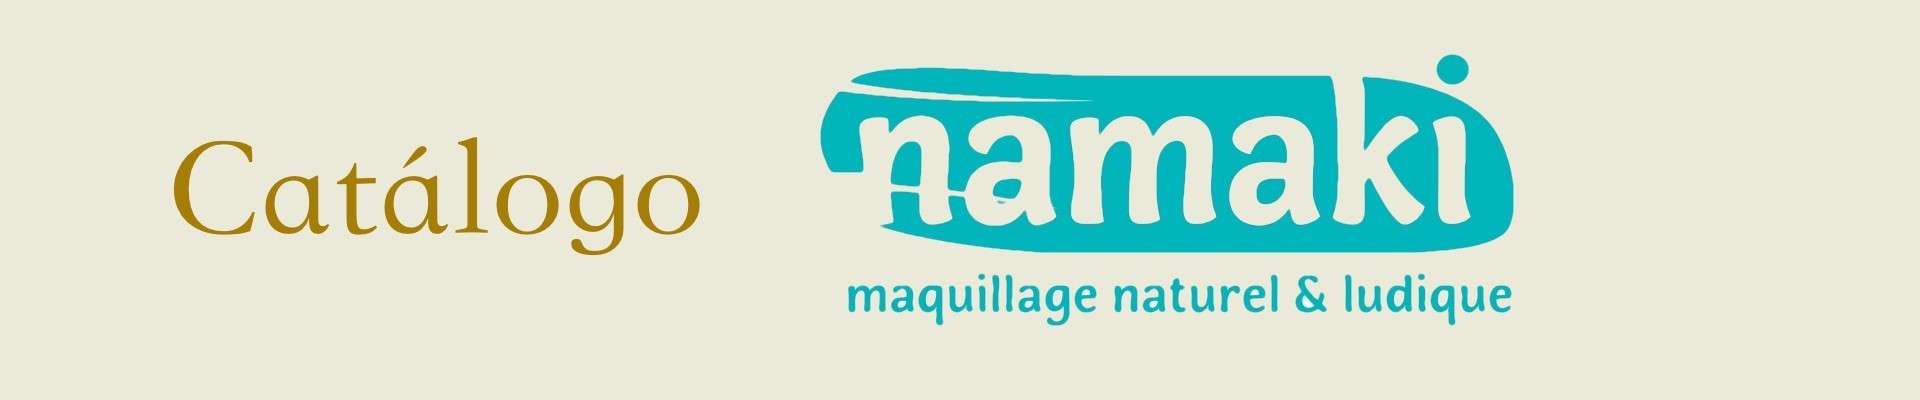 Comprar juguetes educativos para niños de la marca Namaki | Veobio